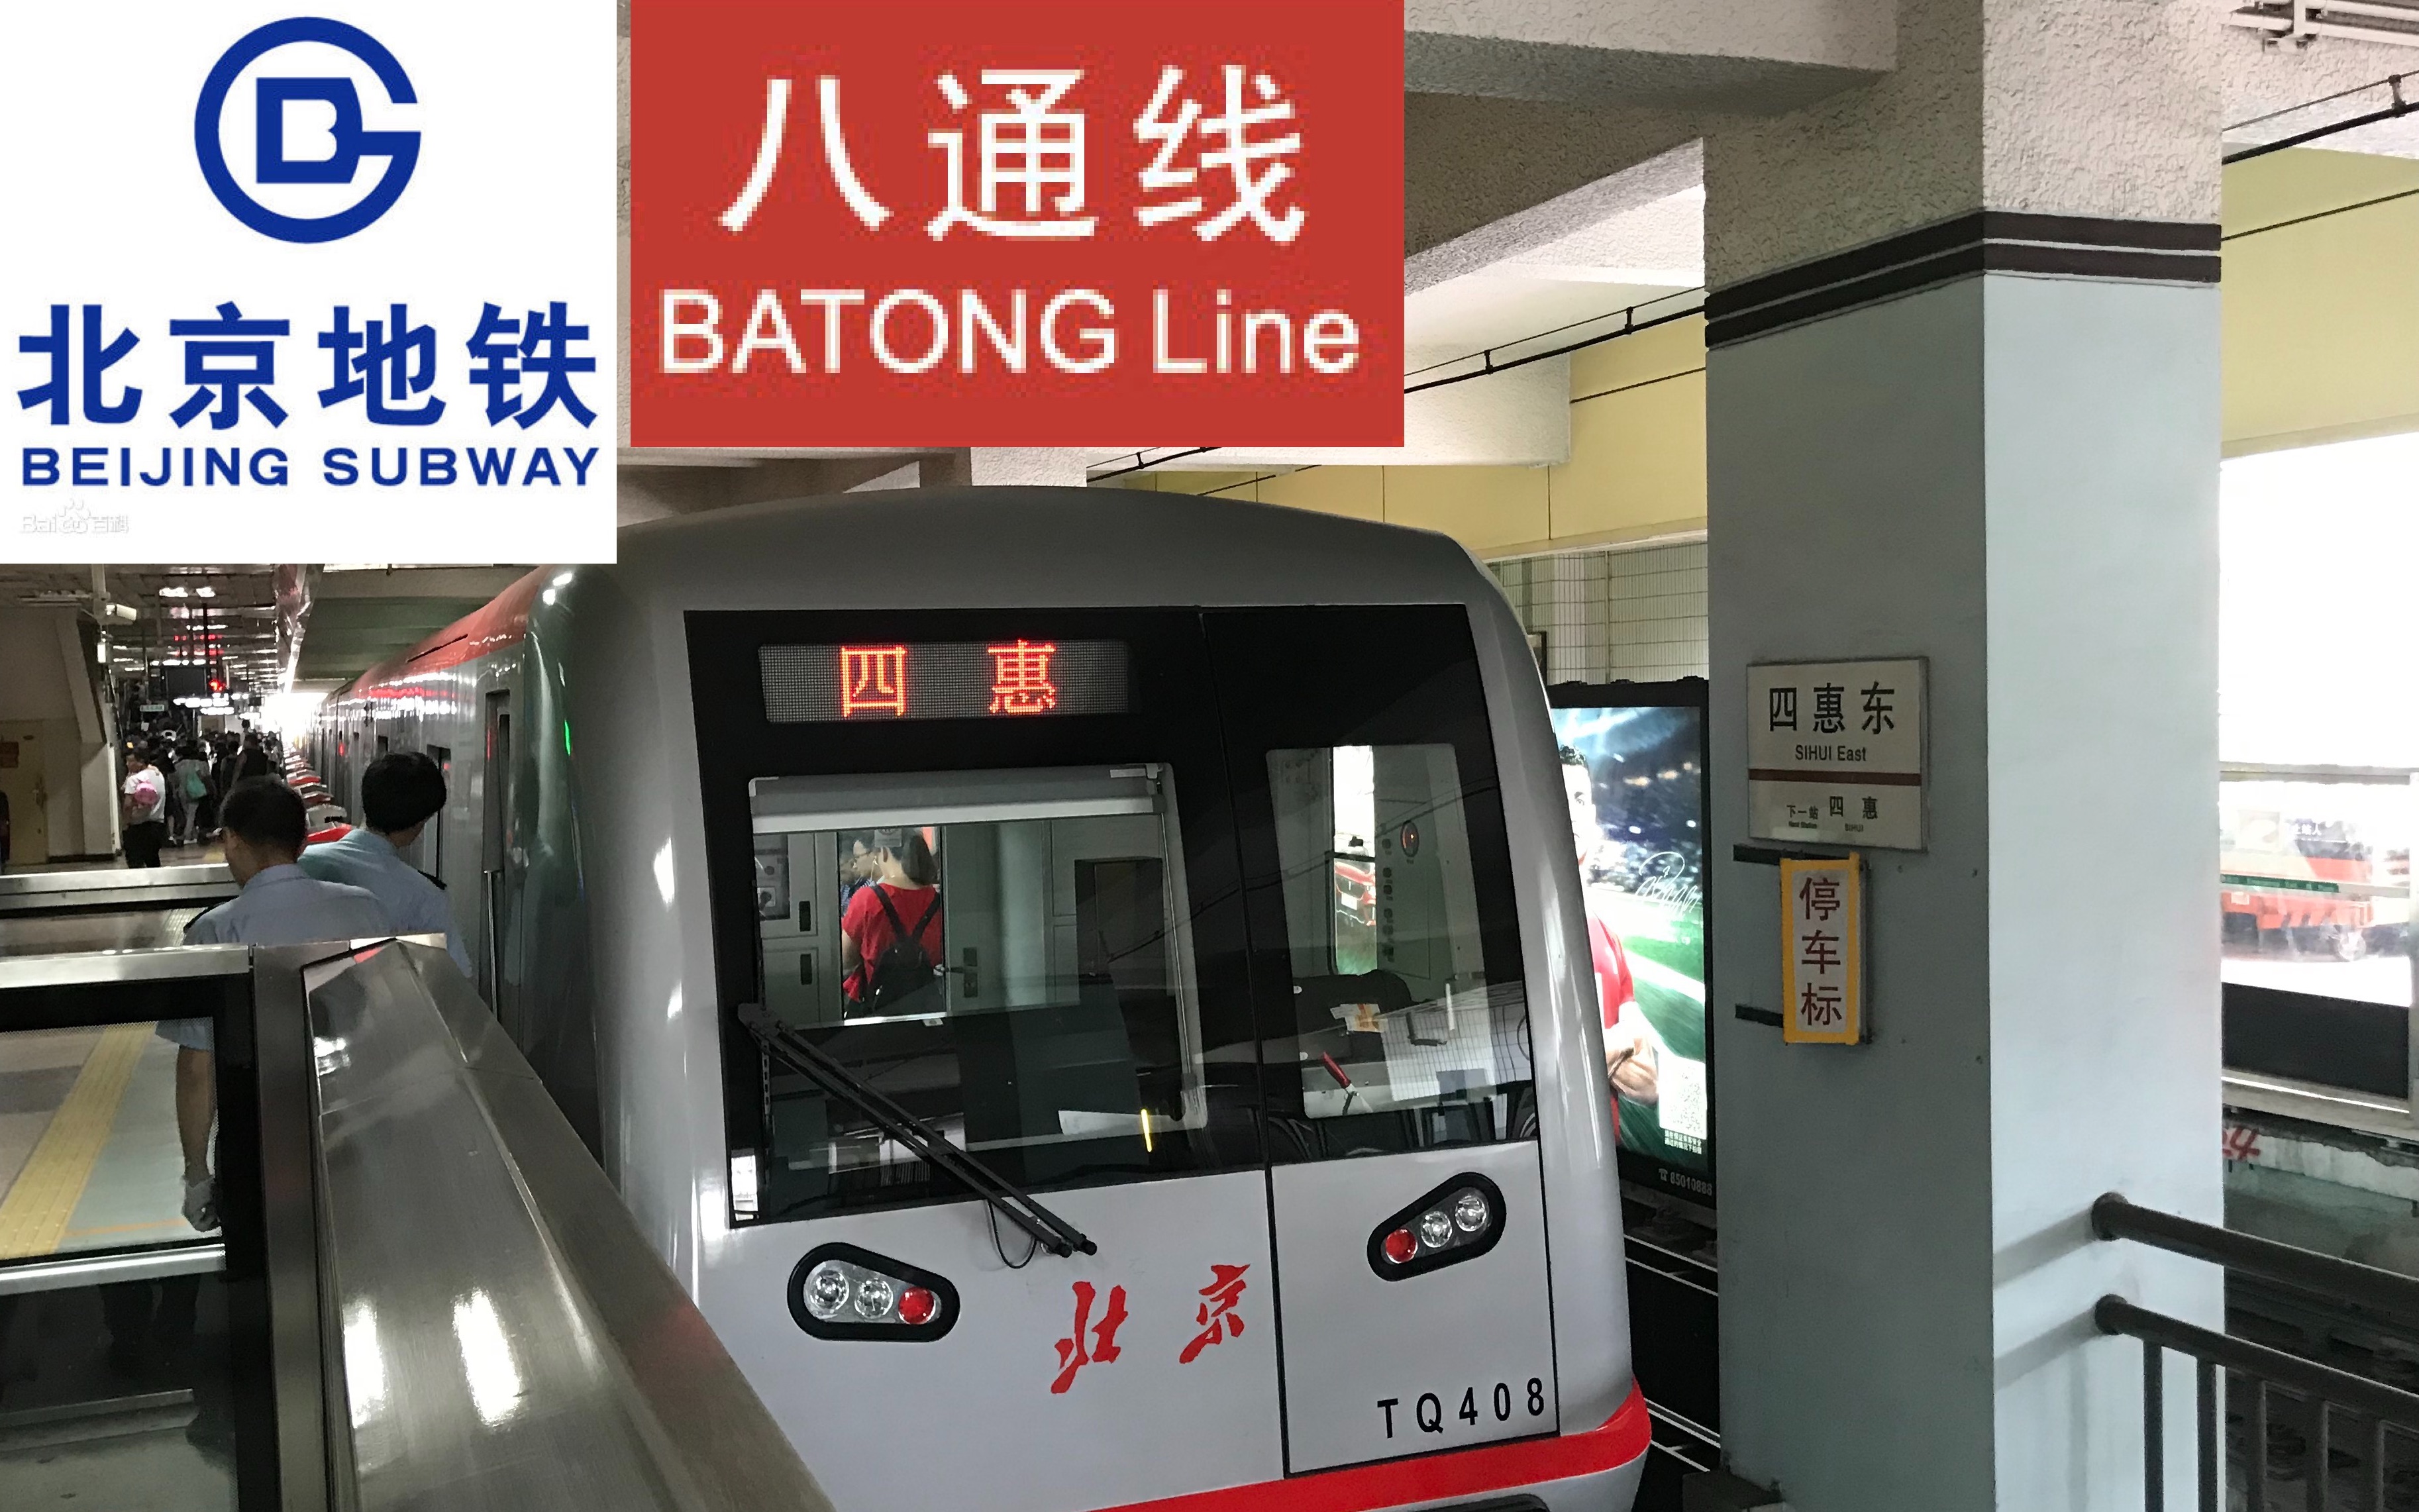 来往北京城市副中心的地铁线路-【北京地铁八通线】土桥站至四惠站